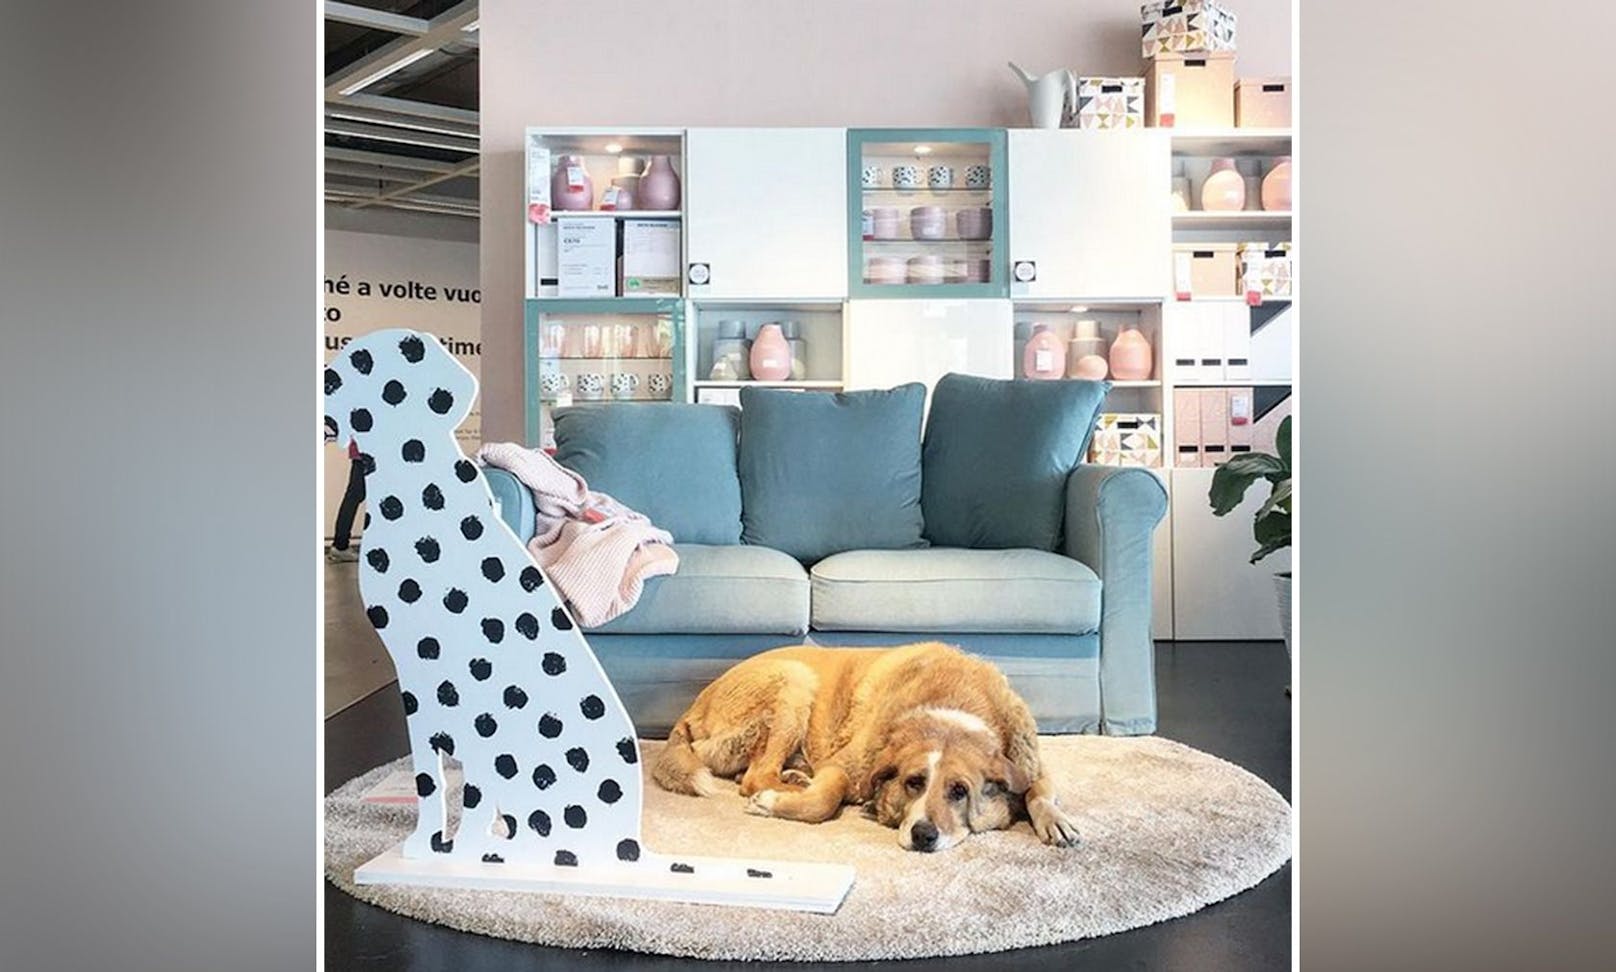 Rührend! Aufgrund der heftigen Unwetter in Catania (Italien) durften Straßenhunde im Möbelhaus IKEA Unterschlupf suchen. 